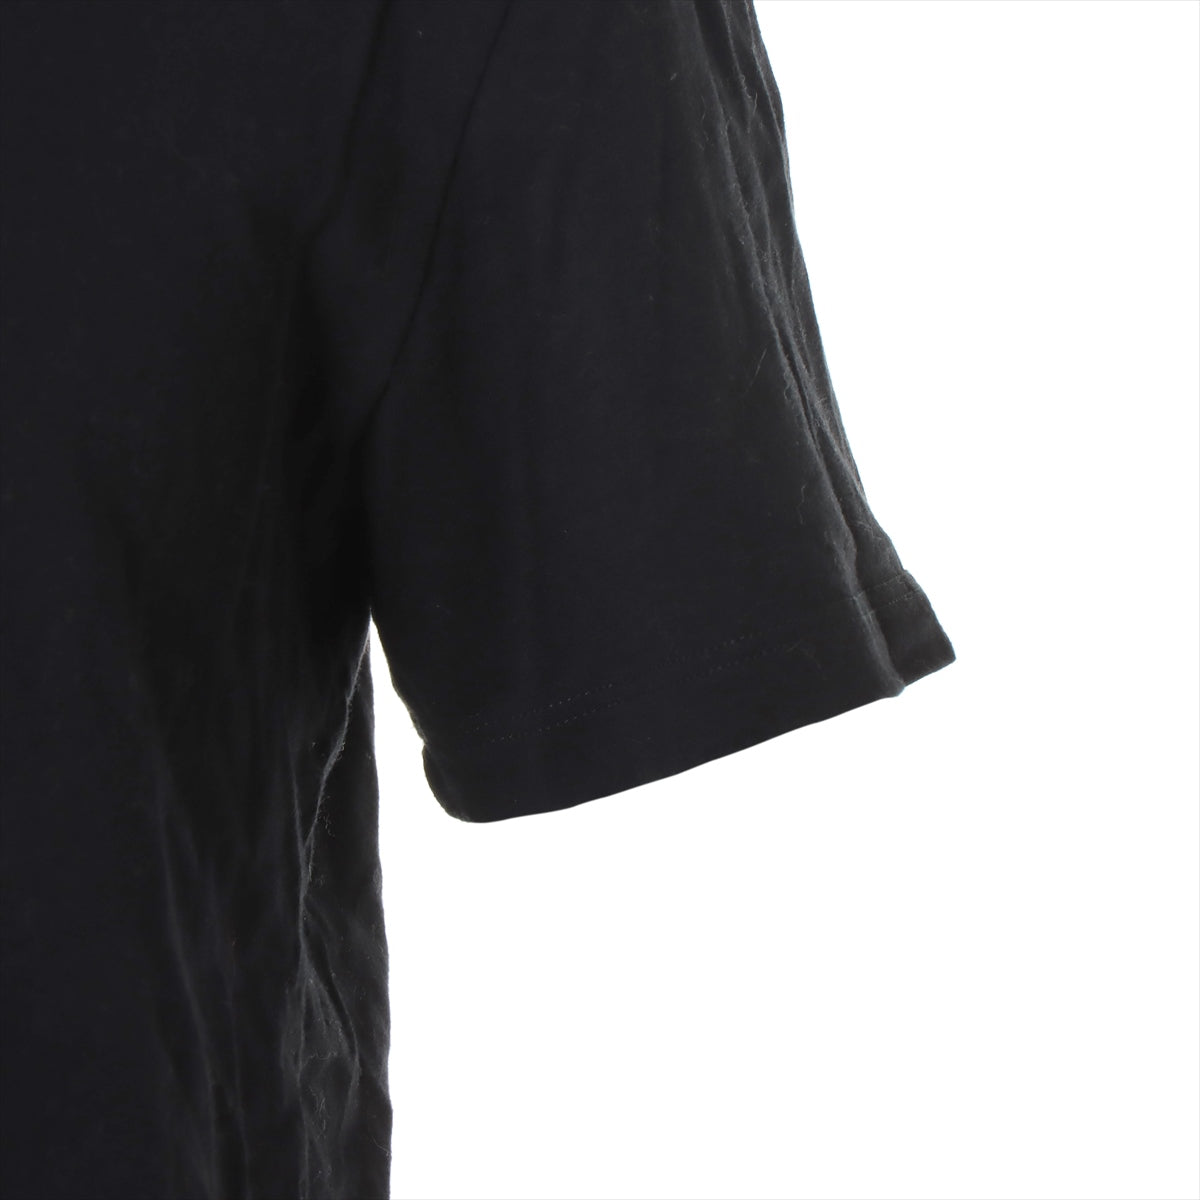 ヴァレンティノ VLTNロゴ コットン Tシャツ M メンズ ブラック